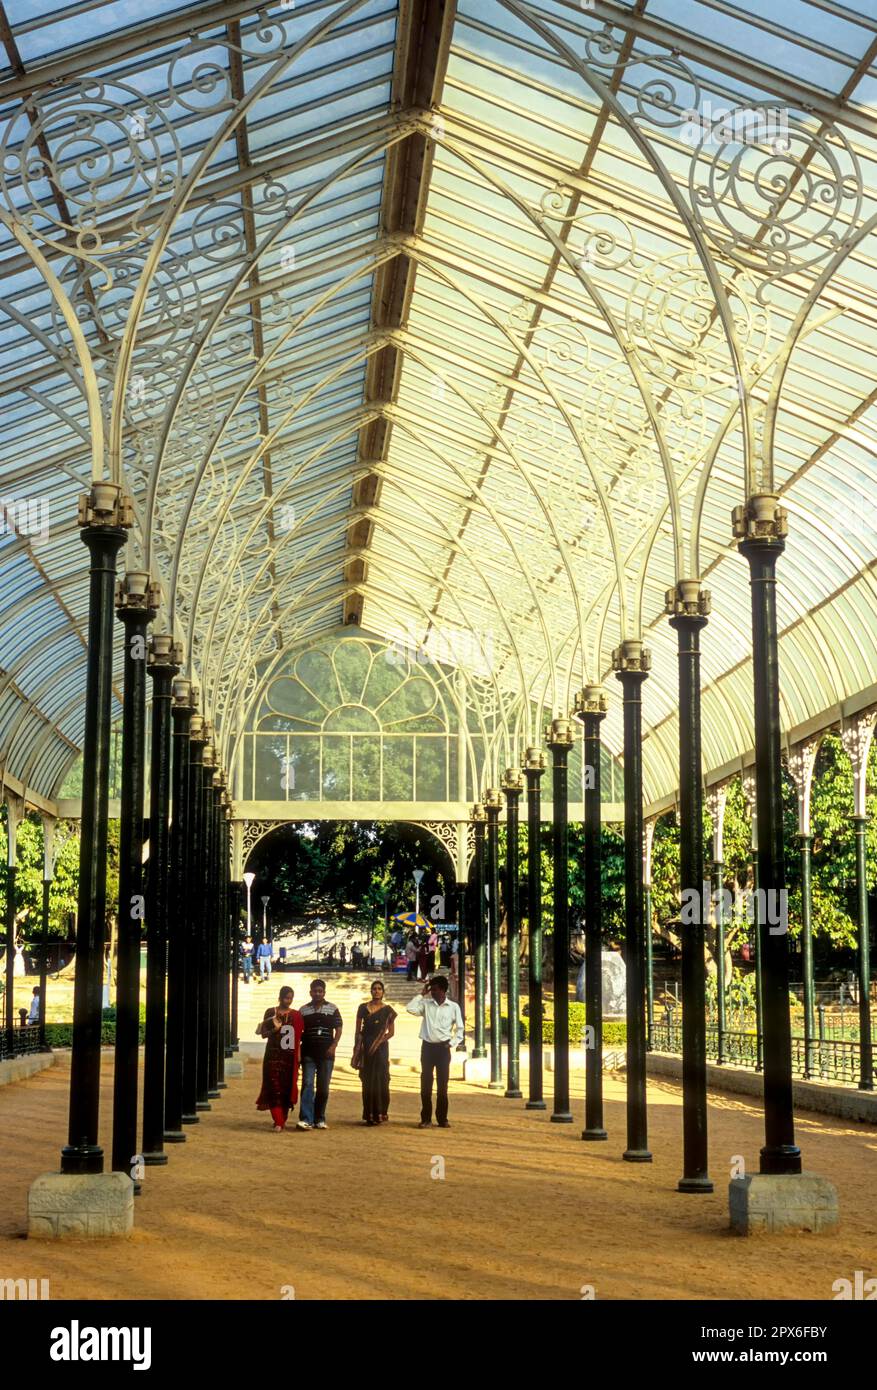 Größtes Glashaus in Indien in den botanischen Gärten von Lal Bagh in Bengaluru Bangalore, Karnataka, Südindien, Indien, Asien Stockfoto